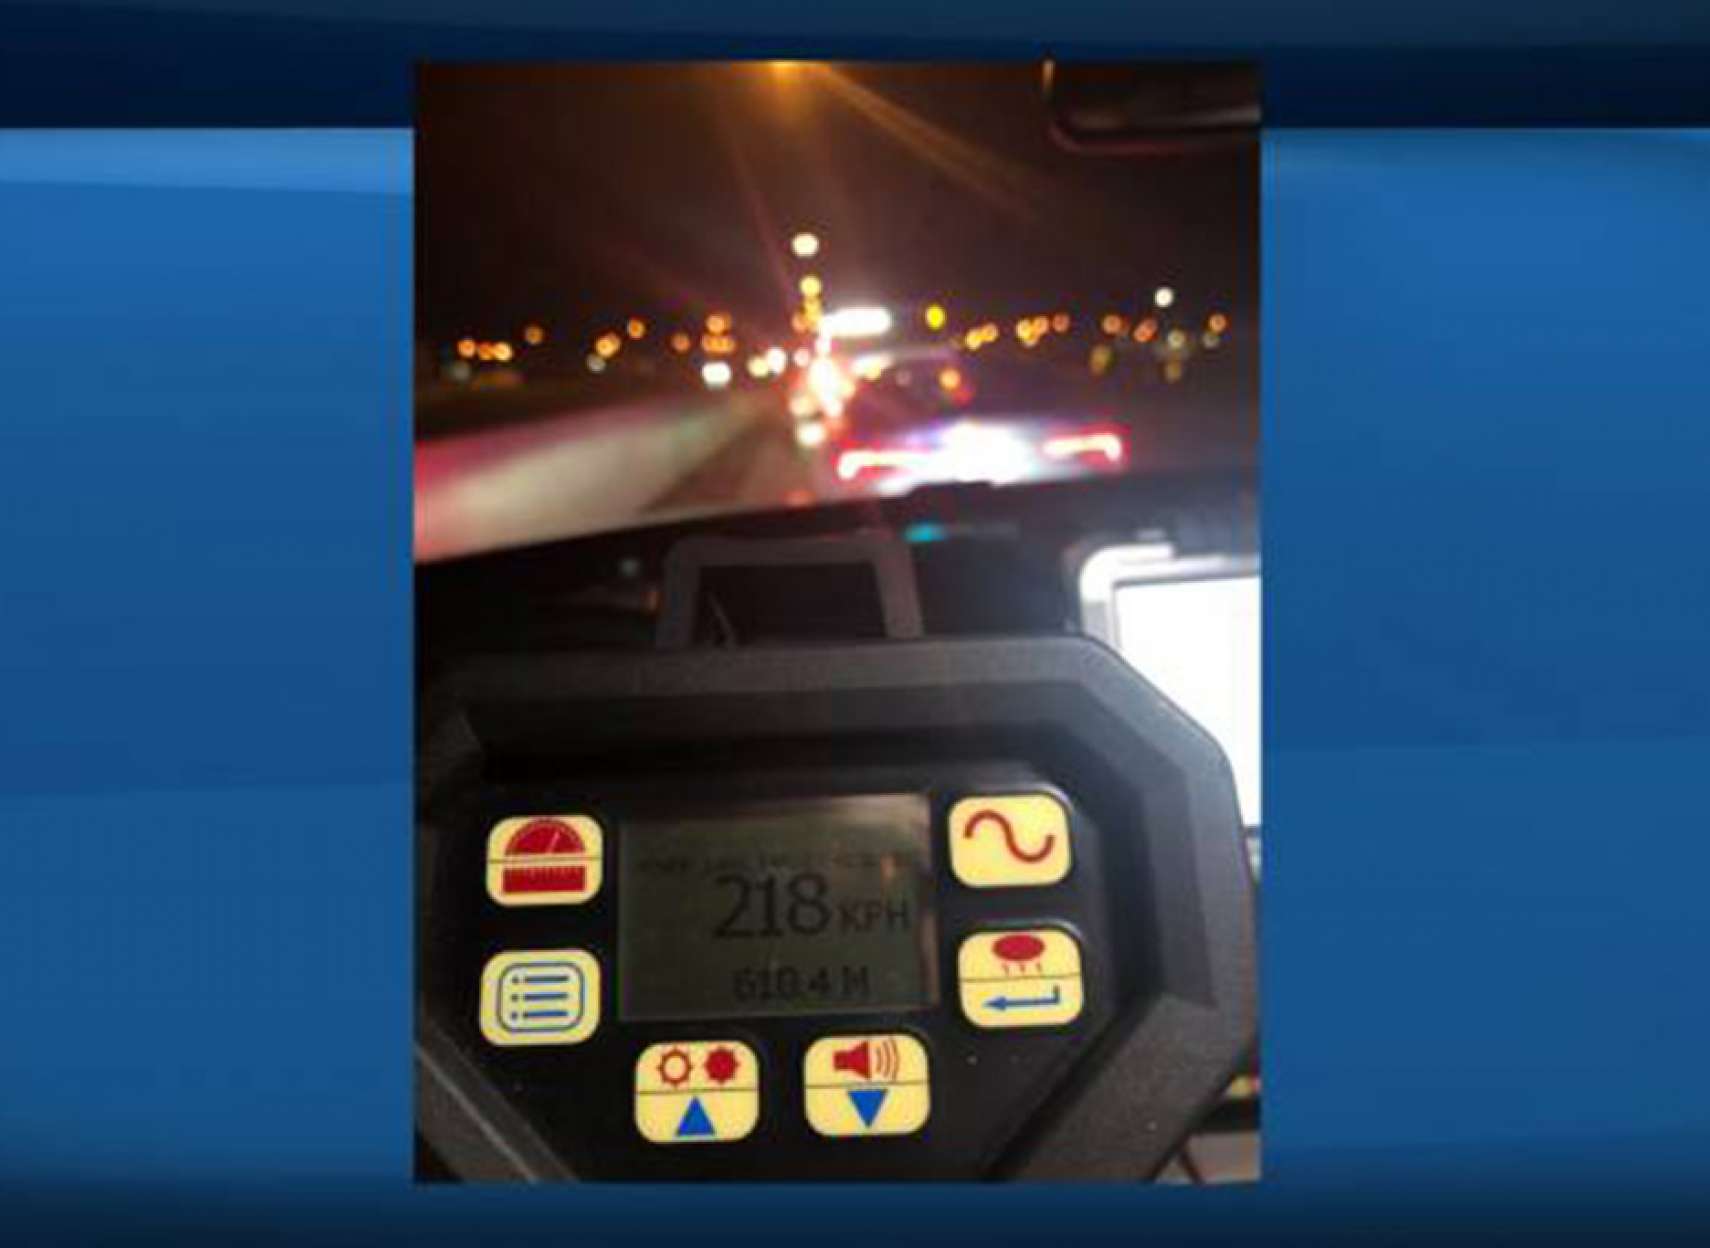 اخبار-تورنتو-جوان-19-ساله-118-کیلومتر-در-ساعت-بیش-از-حد-مجاز-سرعت-داشت